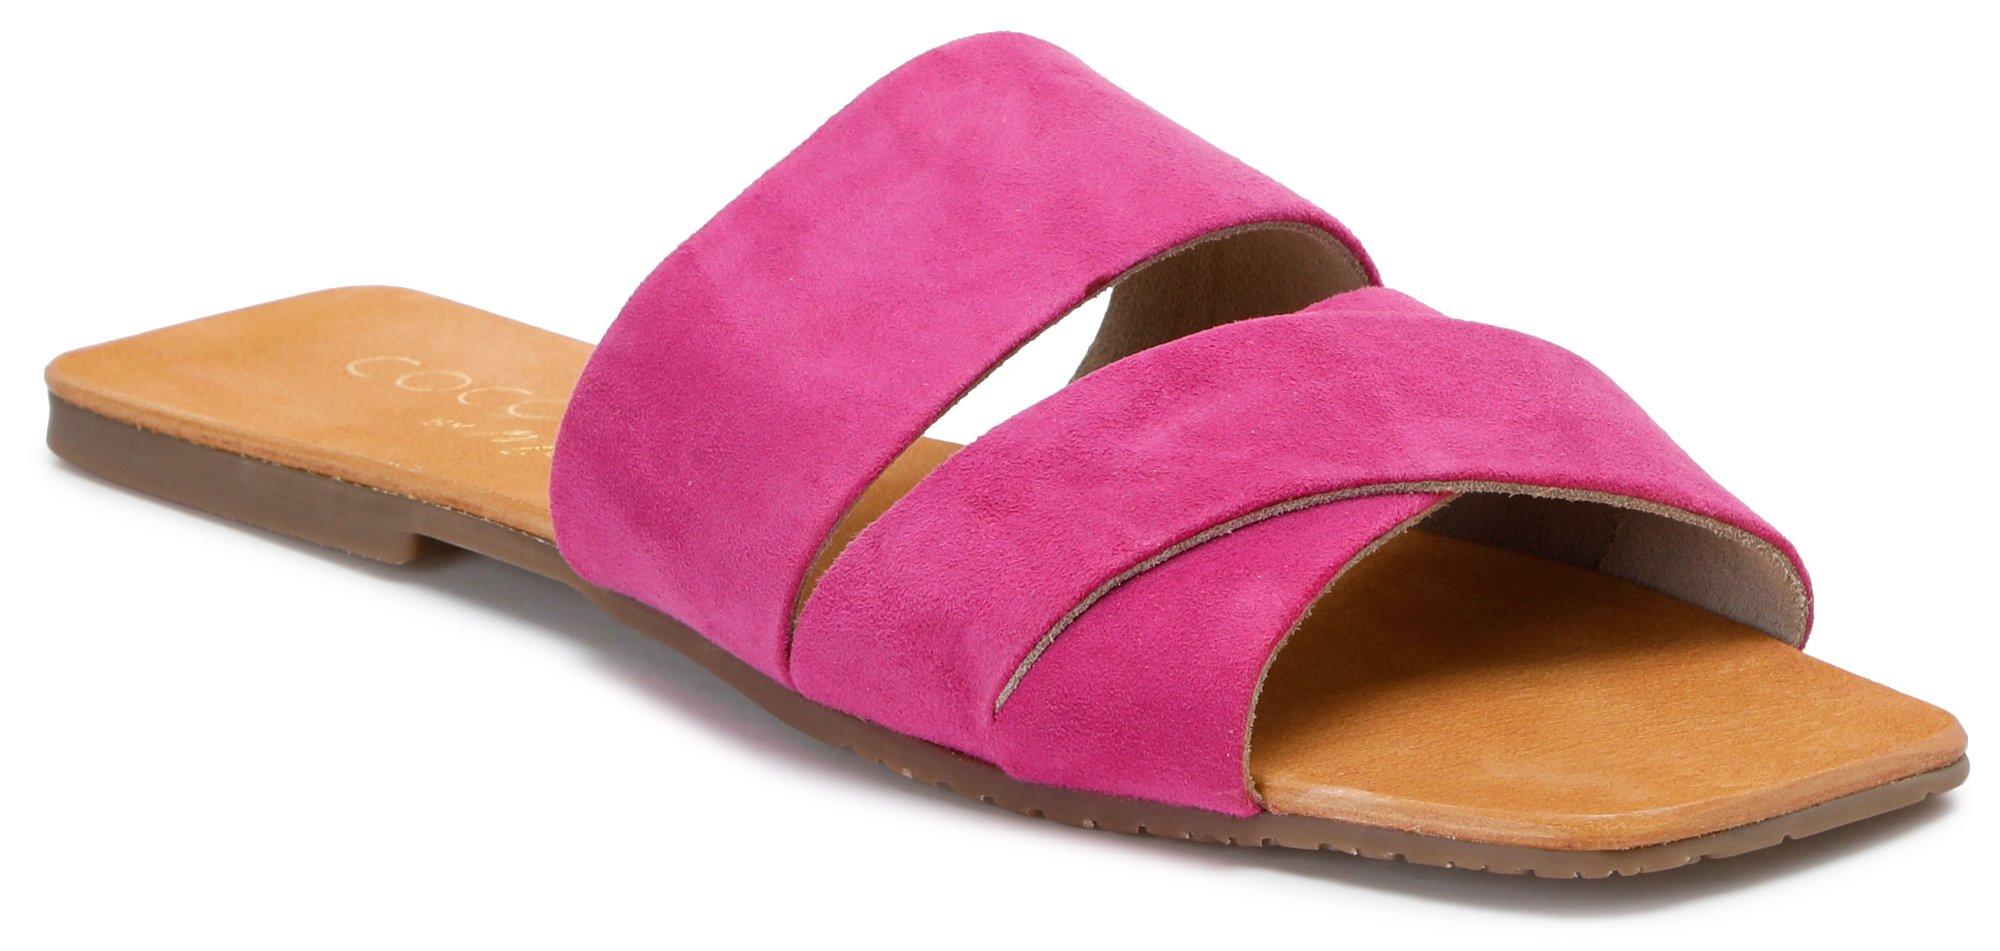 Women's Faux Suede Slide Sandals